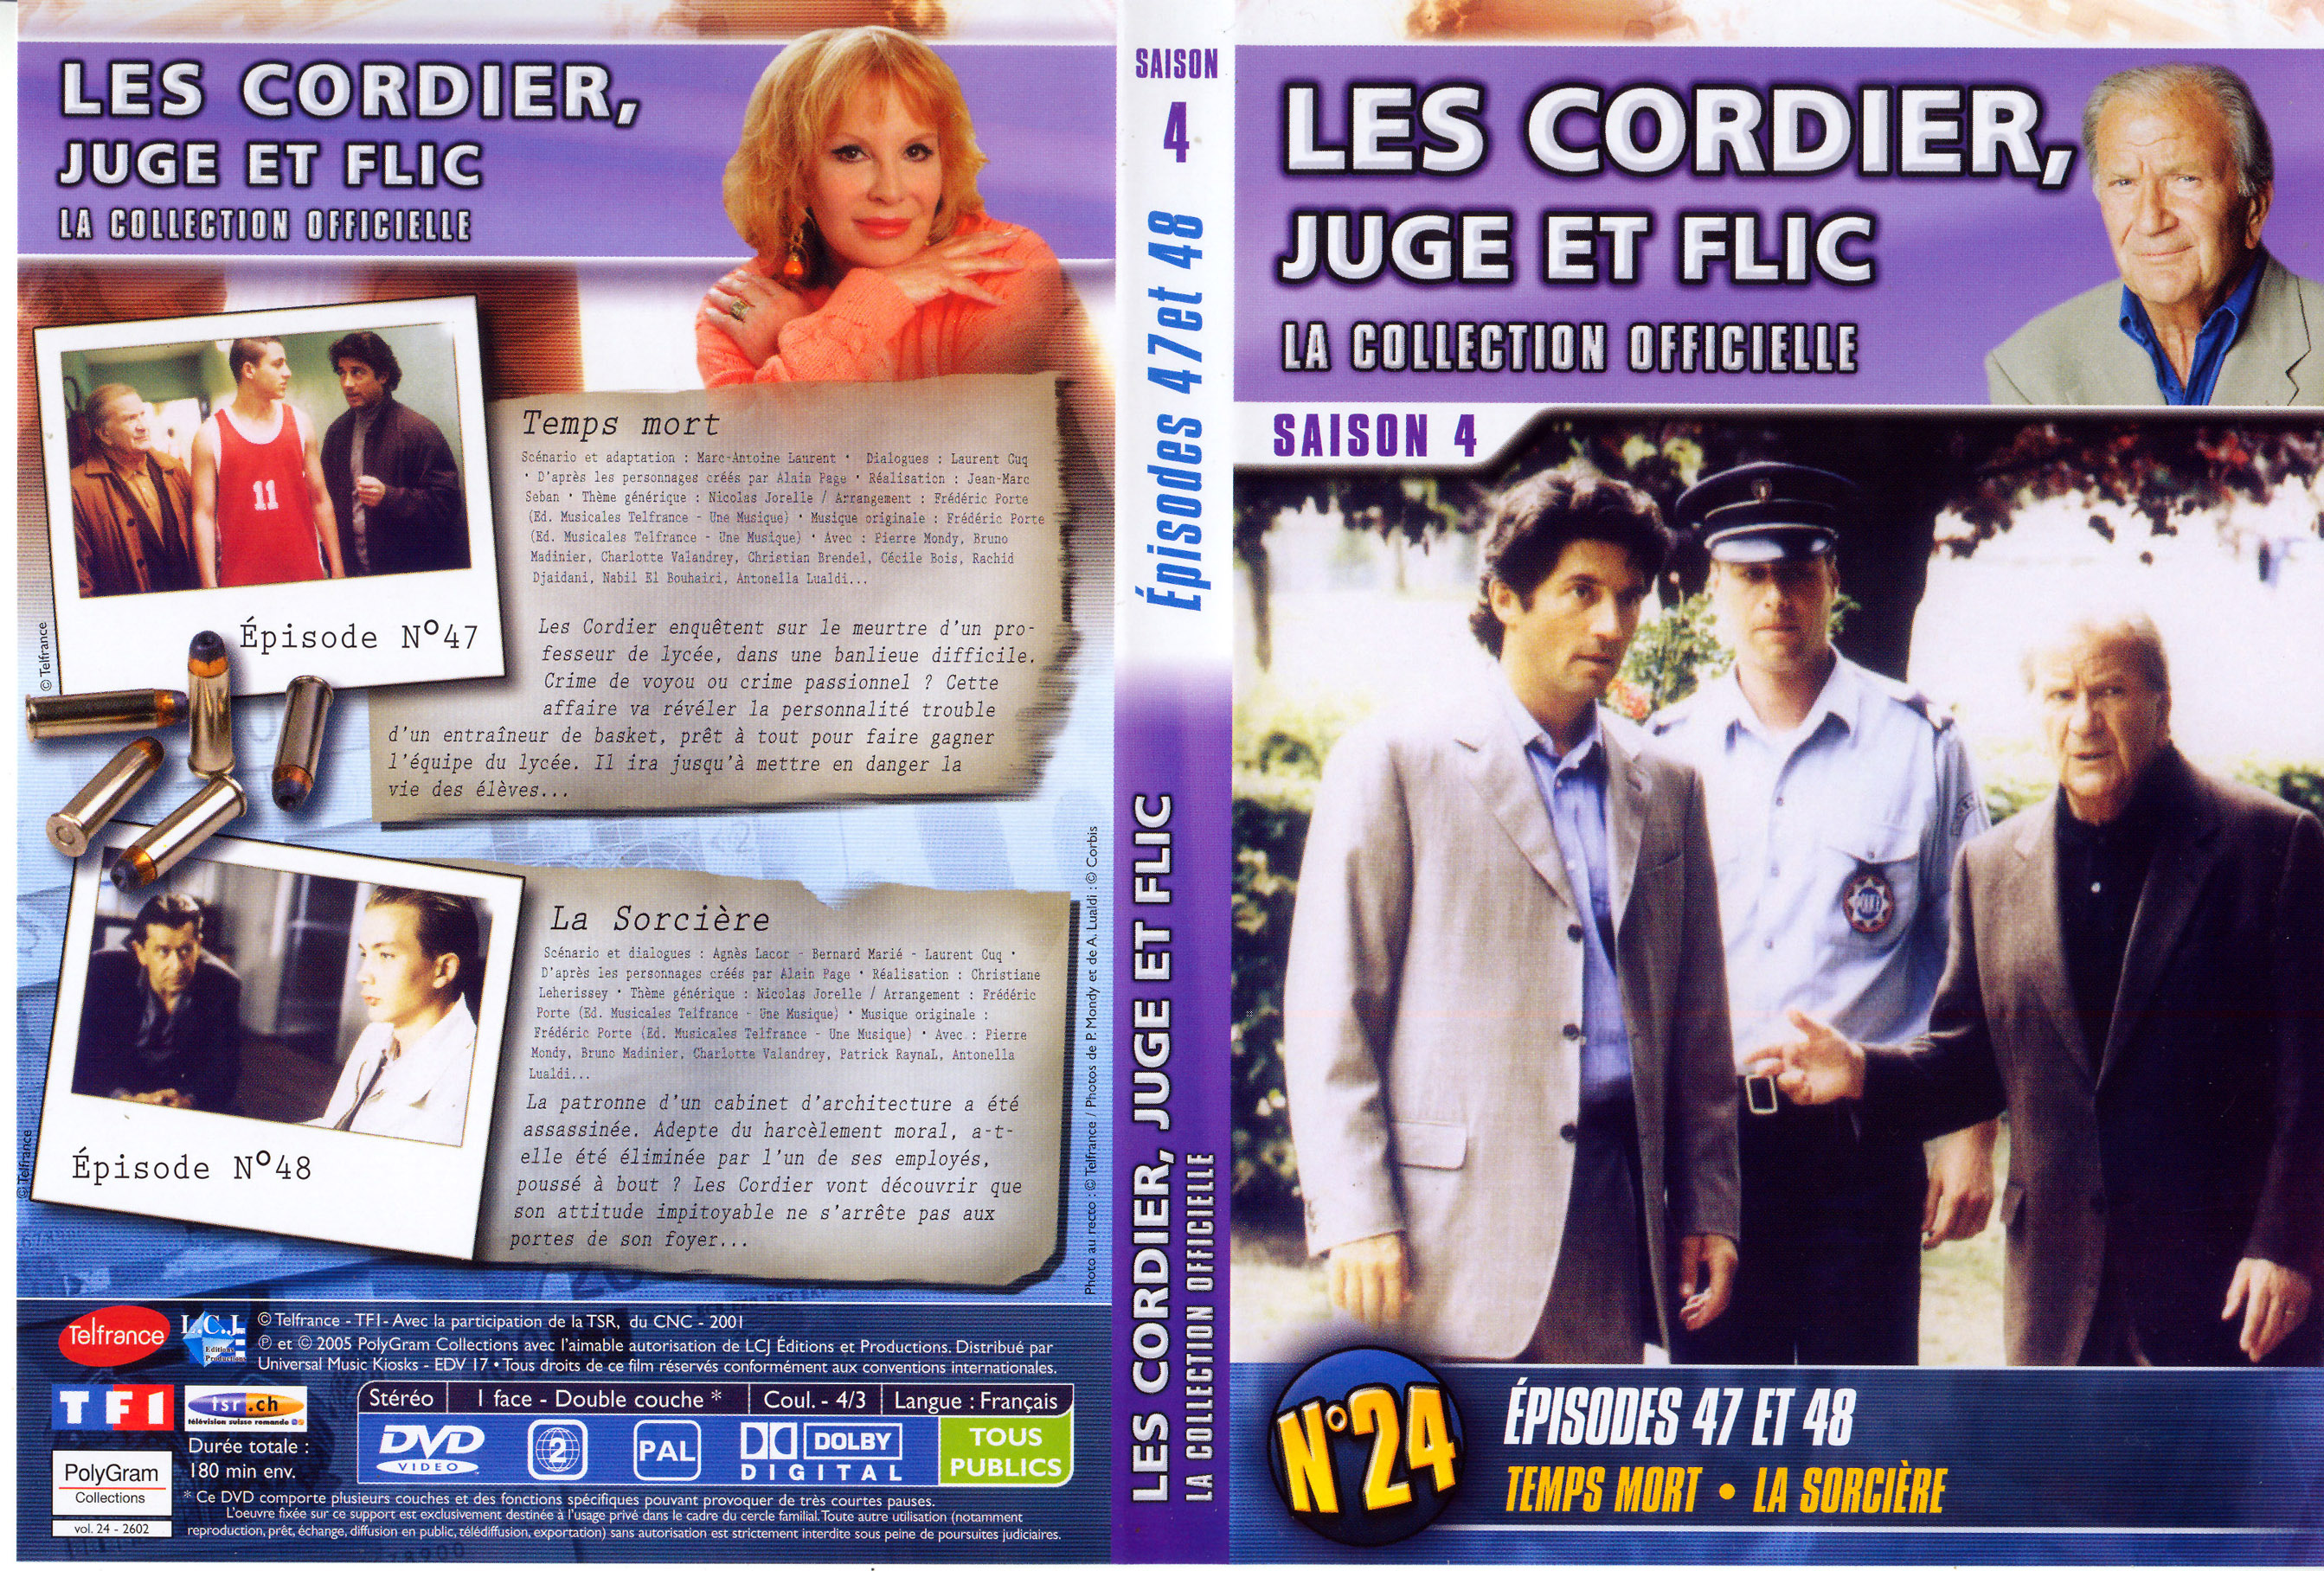 Jaquette DVD Les cordier juge et flic Saison 4 vol 24